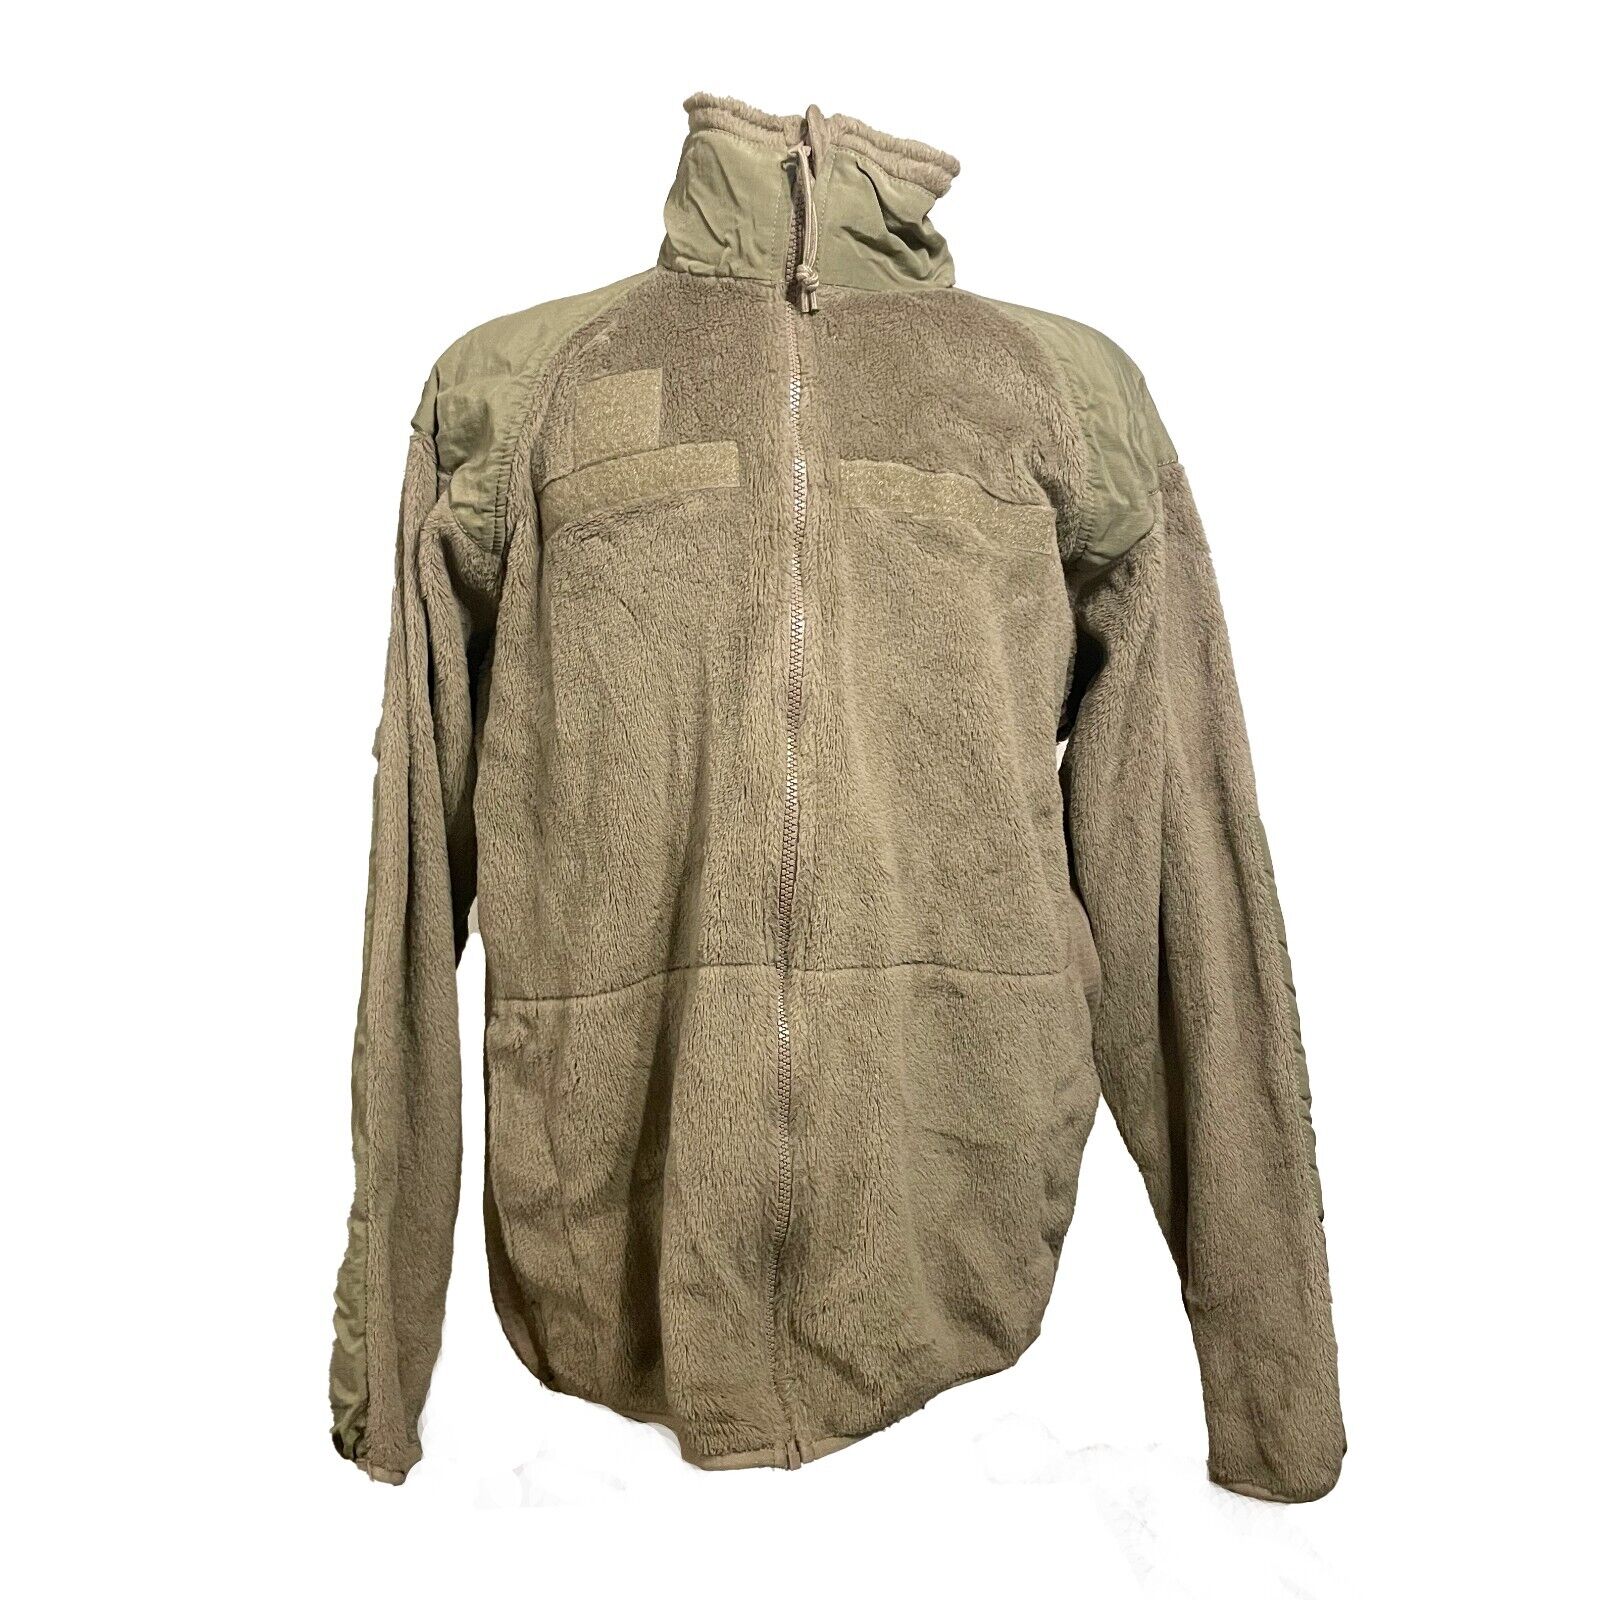 US Military Gen III Polartec 100 Cold Weather Fleece Jacket COYOTE BROWN Medium